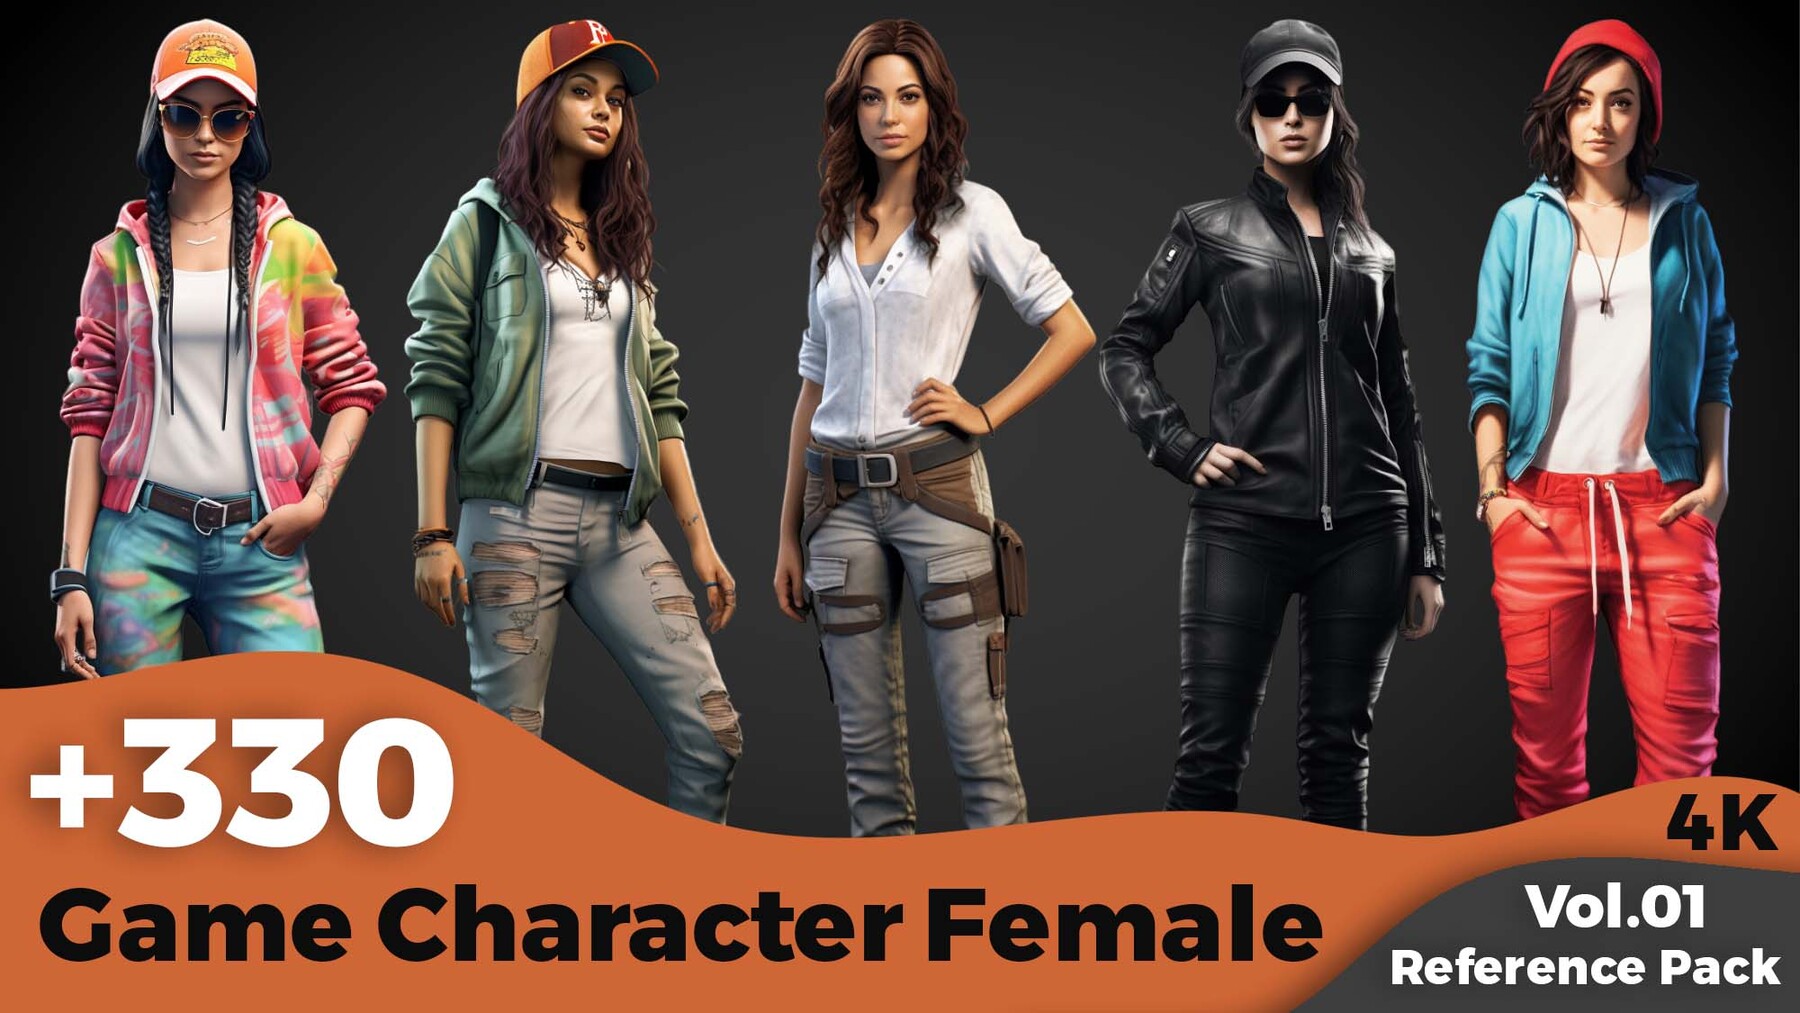 ArtStation - +330 Game Female Character Concept(4k) | Artworks